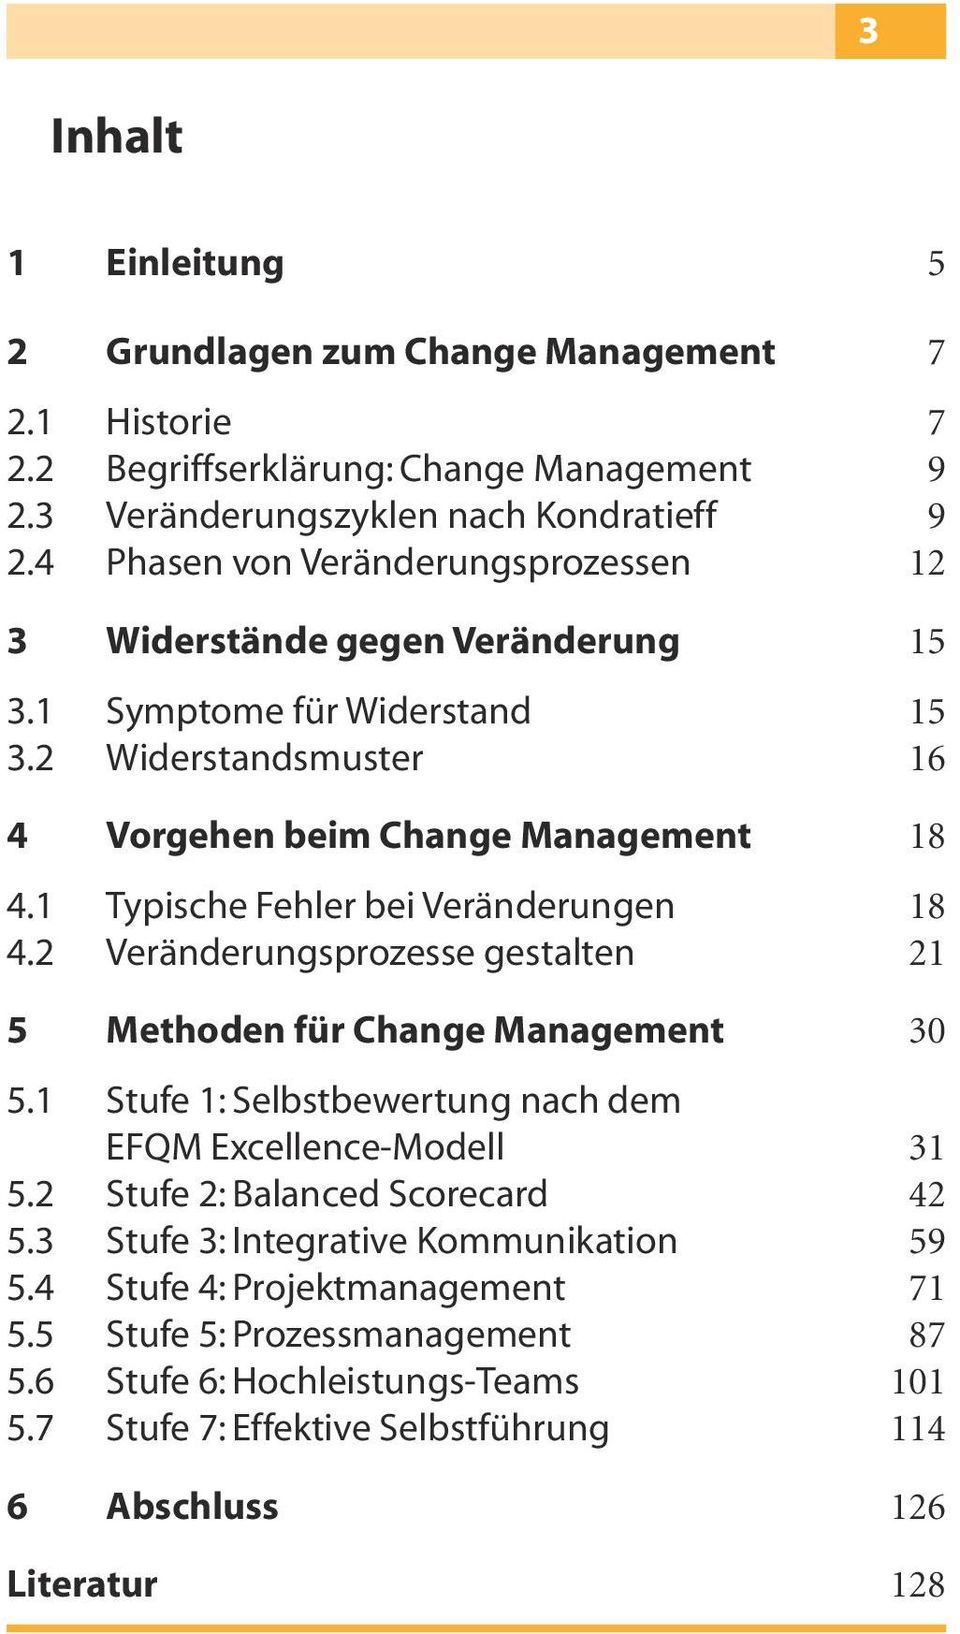 1 Typische Fehler bei Veränderungen 18 4.2 Veränderungsprozesse gestalten 21 5 Methoden für Change Management 30 5.1 Stufe 1: Selbstbewertung nach dem EFQM Excellence-Modell 31 5.